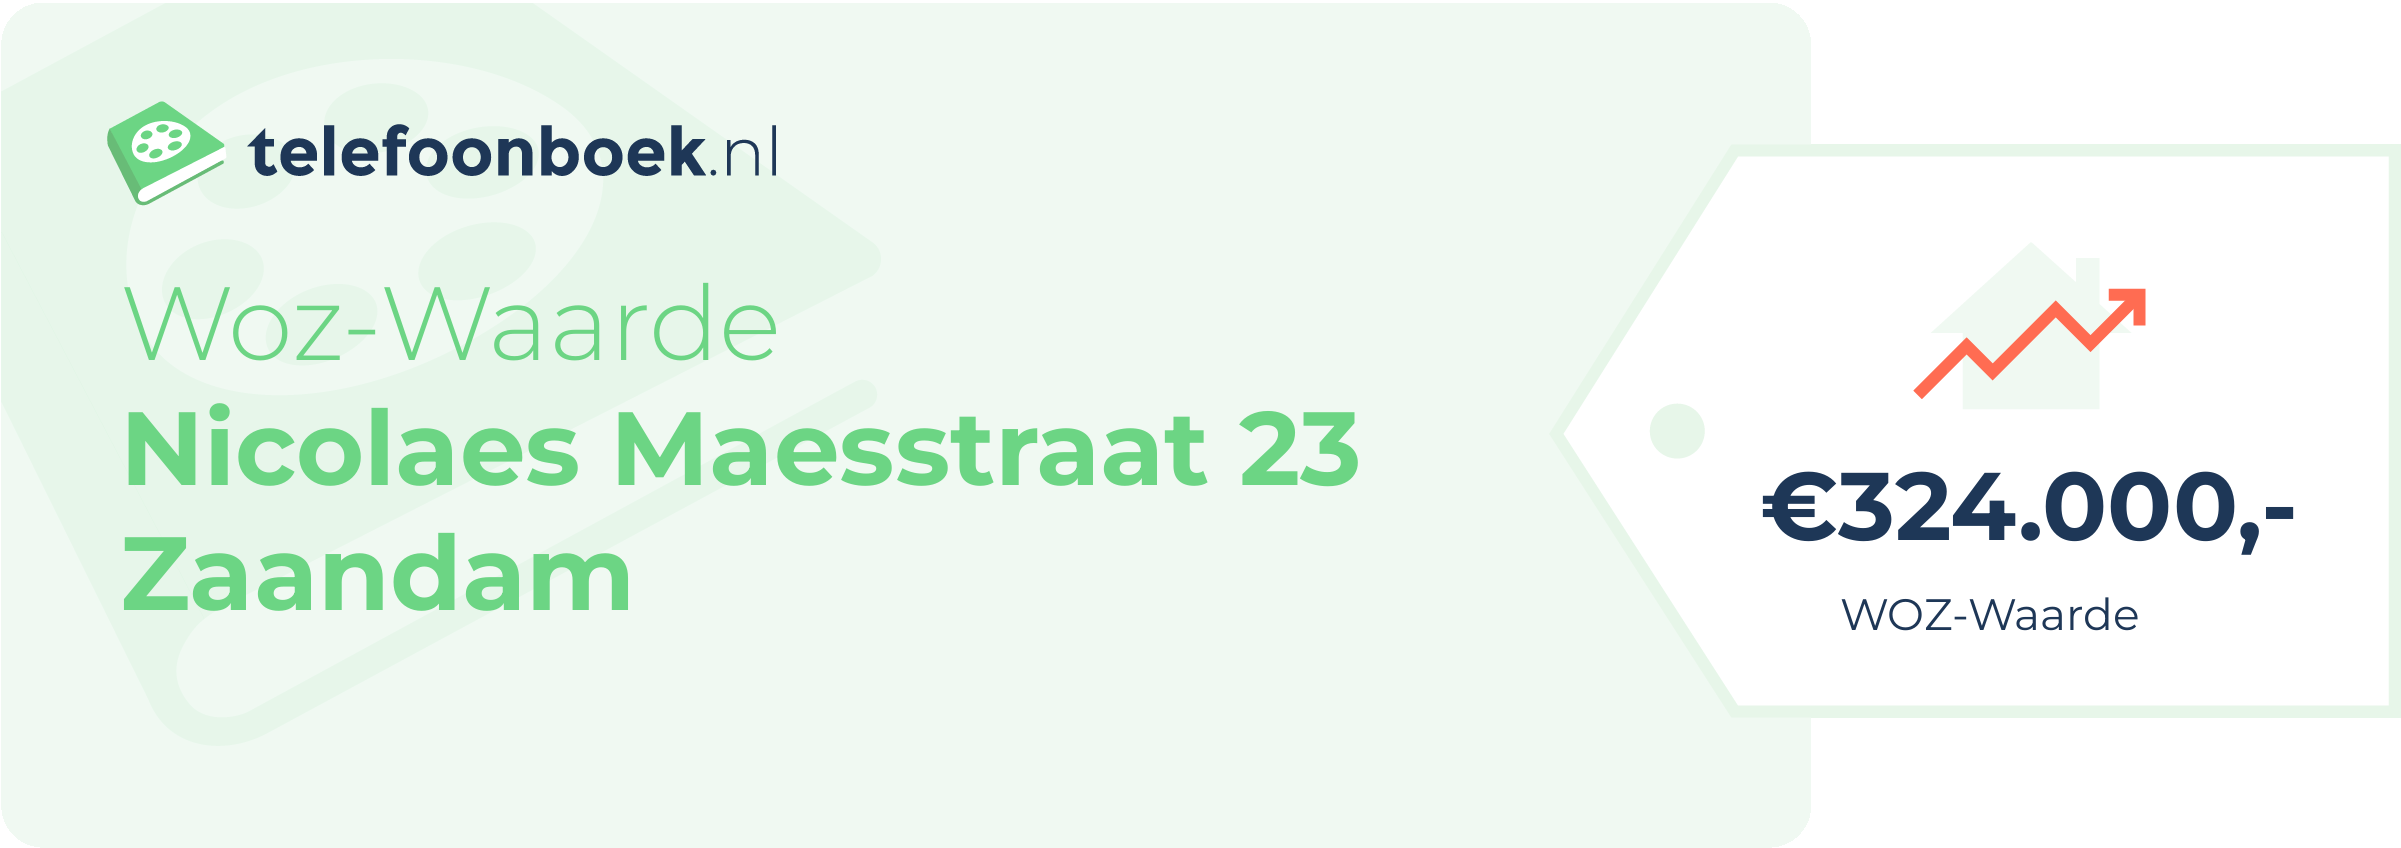 WOZ-waarde Nicolaes Maesstraat 23 Zaandam